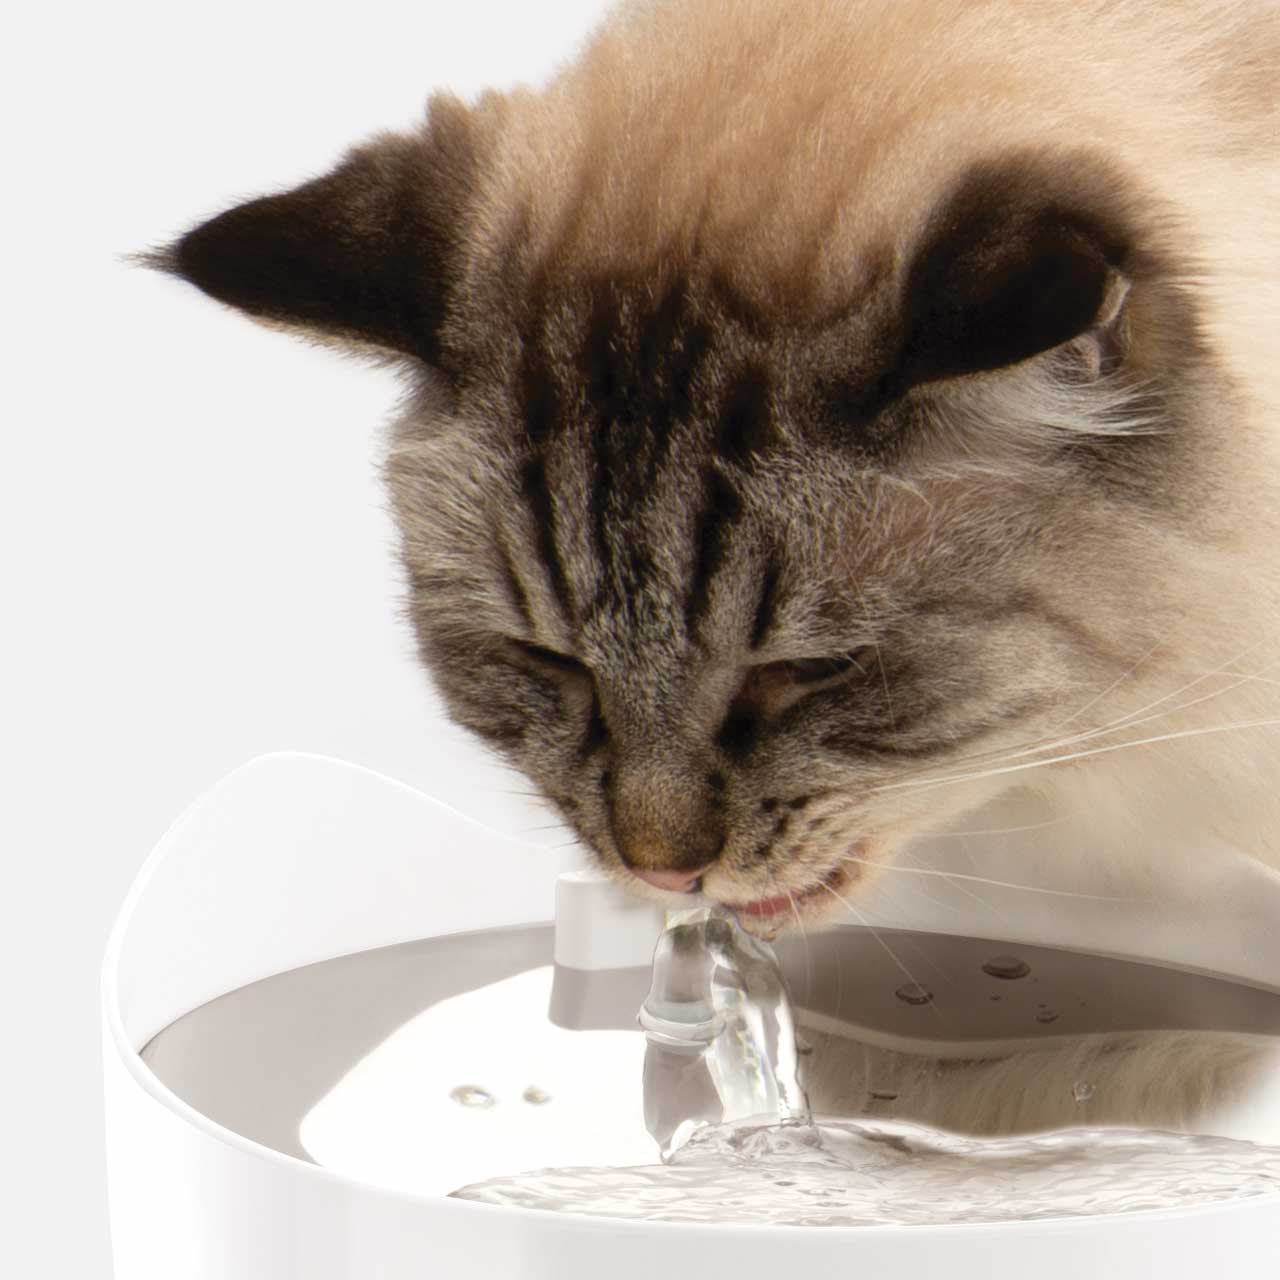 Eine Katze beim Trinken vom PIXI Smart-Trinkbrunnen in einer angenehmen Haltung